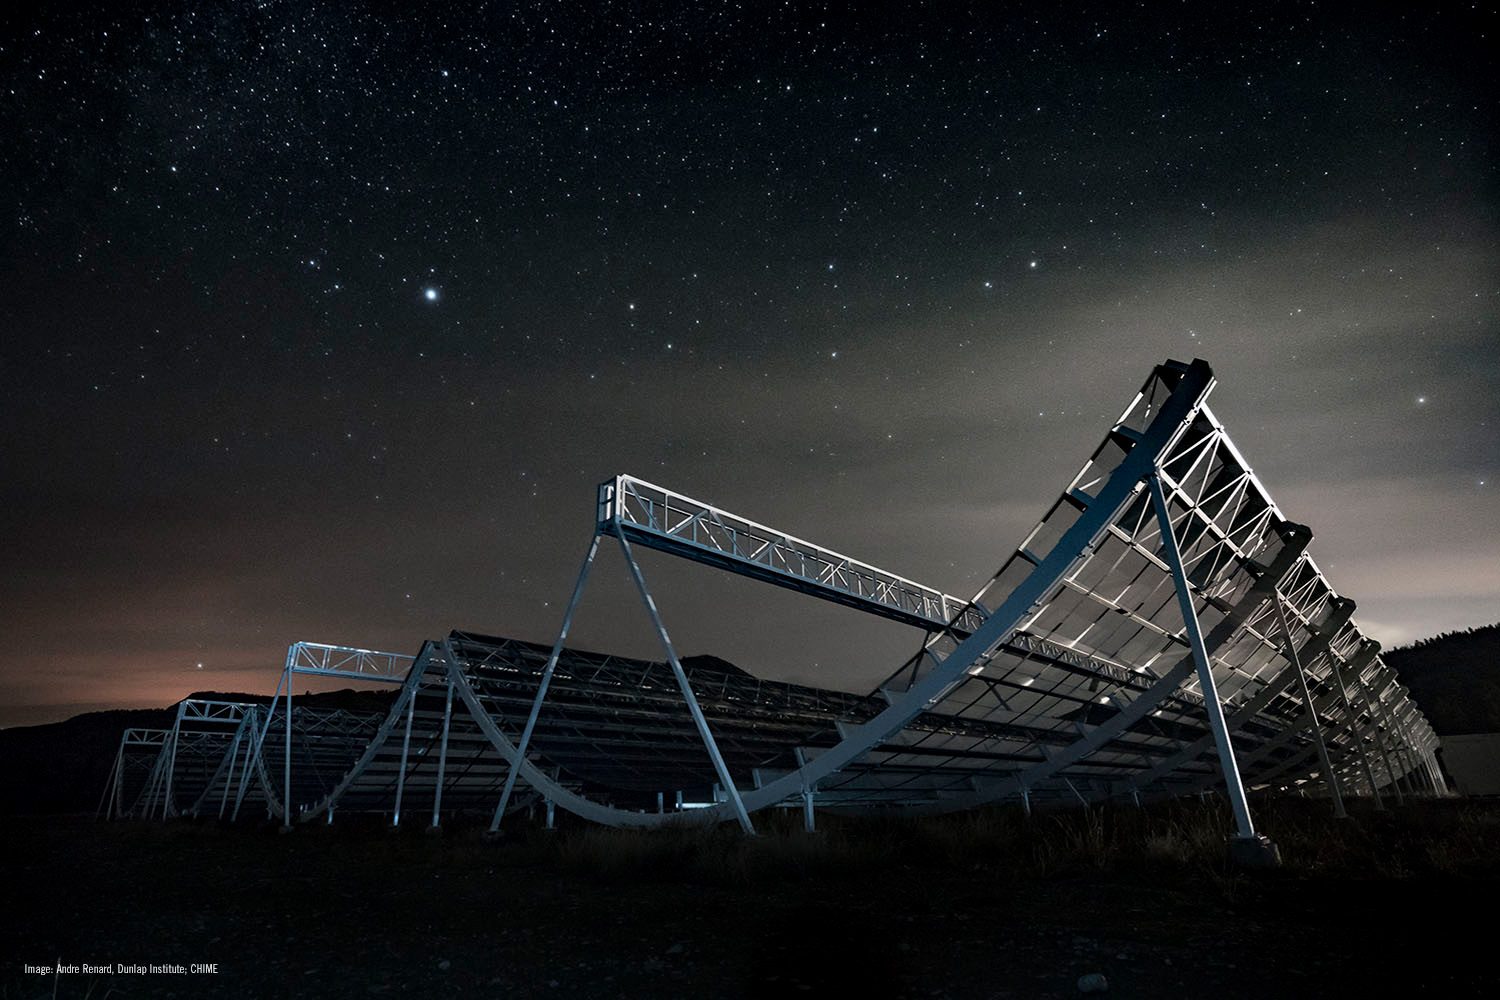 Рис. 1. Канадский радиотелескоп CHIME. Он состоит из четырех антенн в форме параболических цилиндров размером 100×20 метров. Фото с сайта universetoday.com